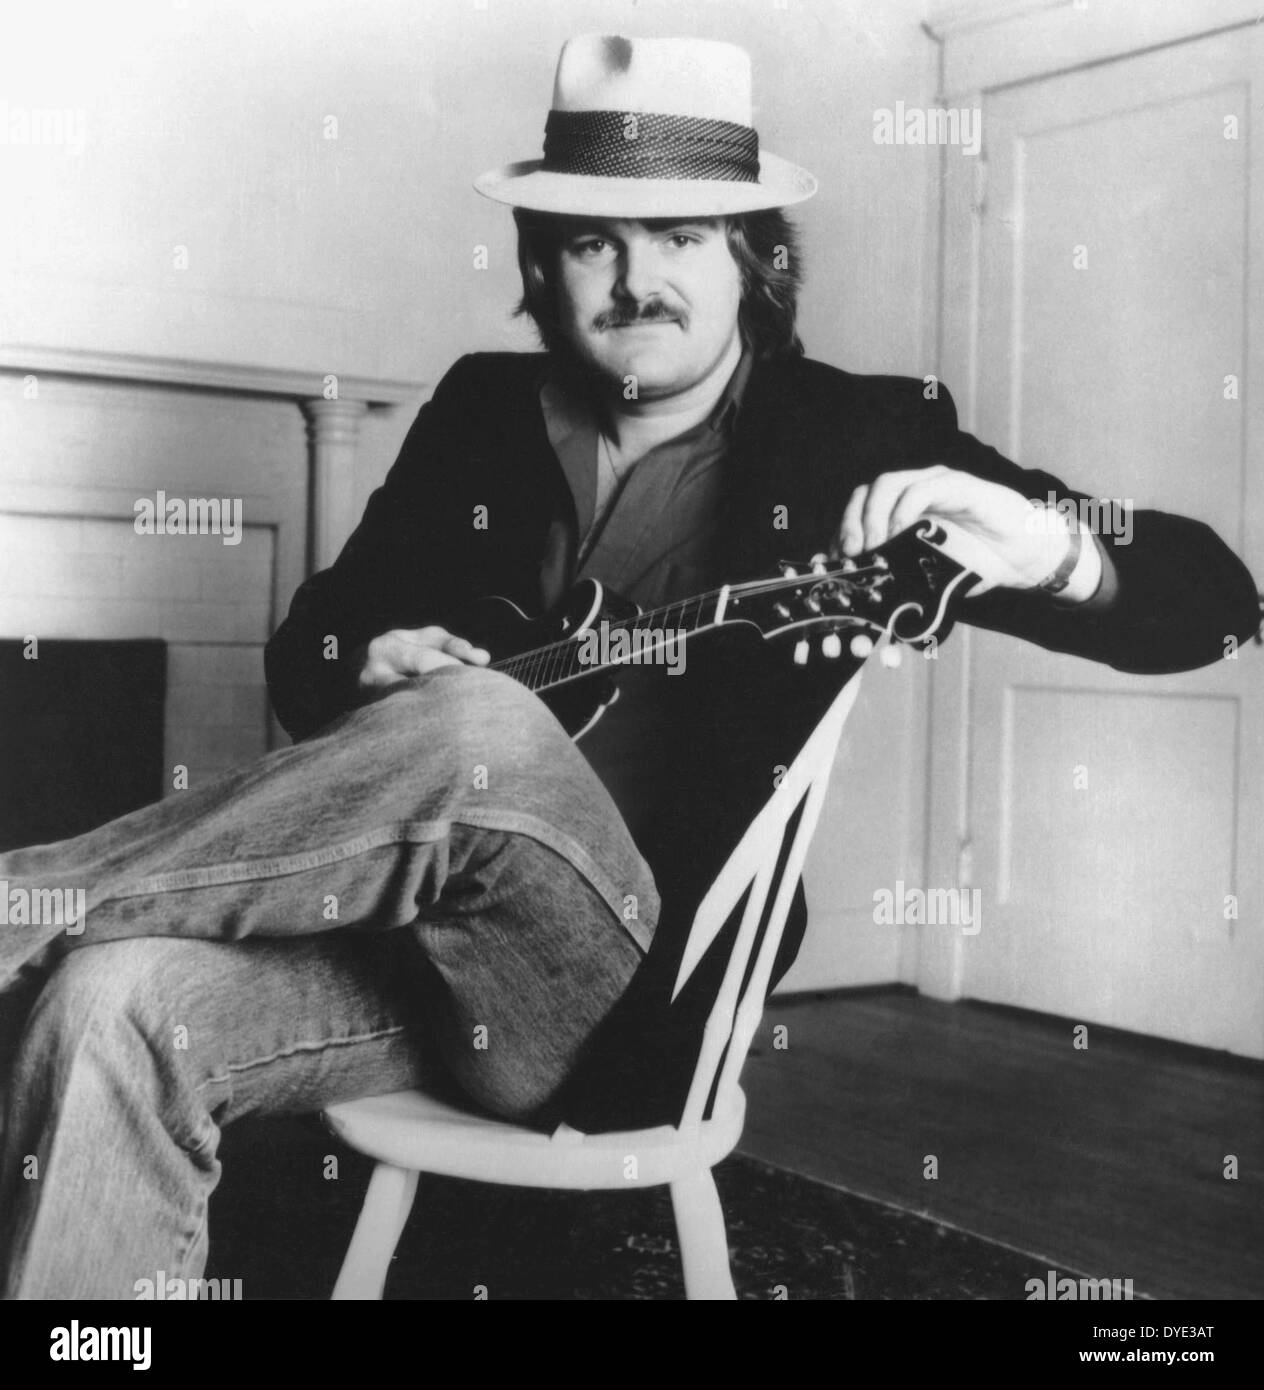 Ricky Skaggs, US-amerikanischer Country-Sänger, Musiker und Komponist, Porträt, etwa Anfang der 1980er Jahre Stockfoto